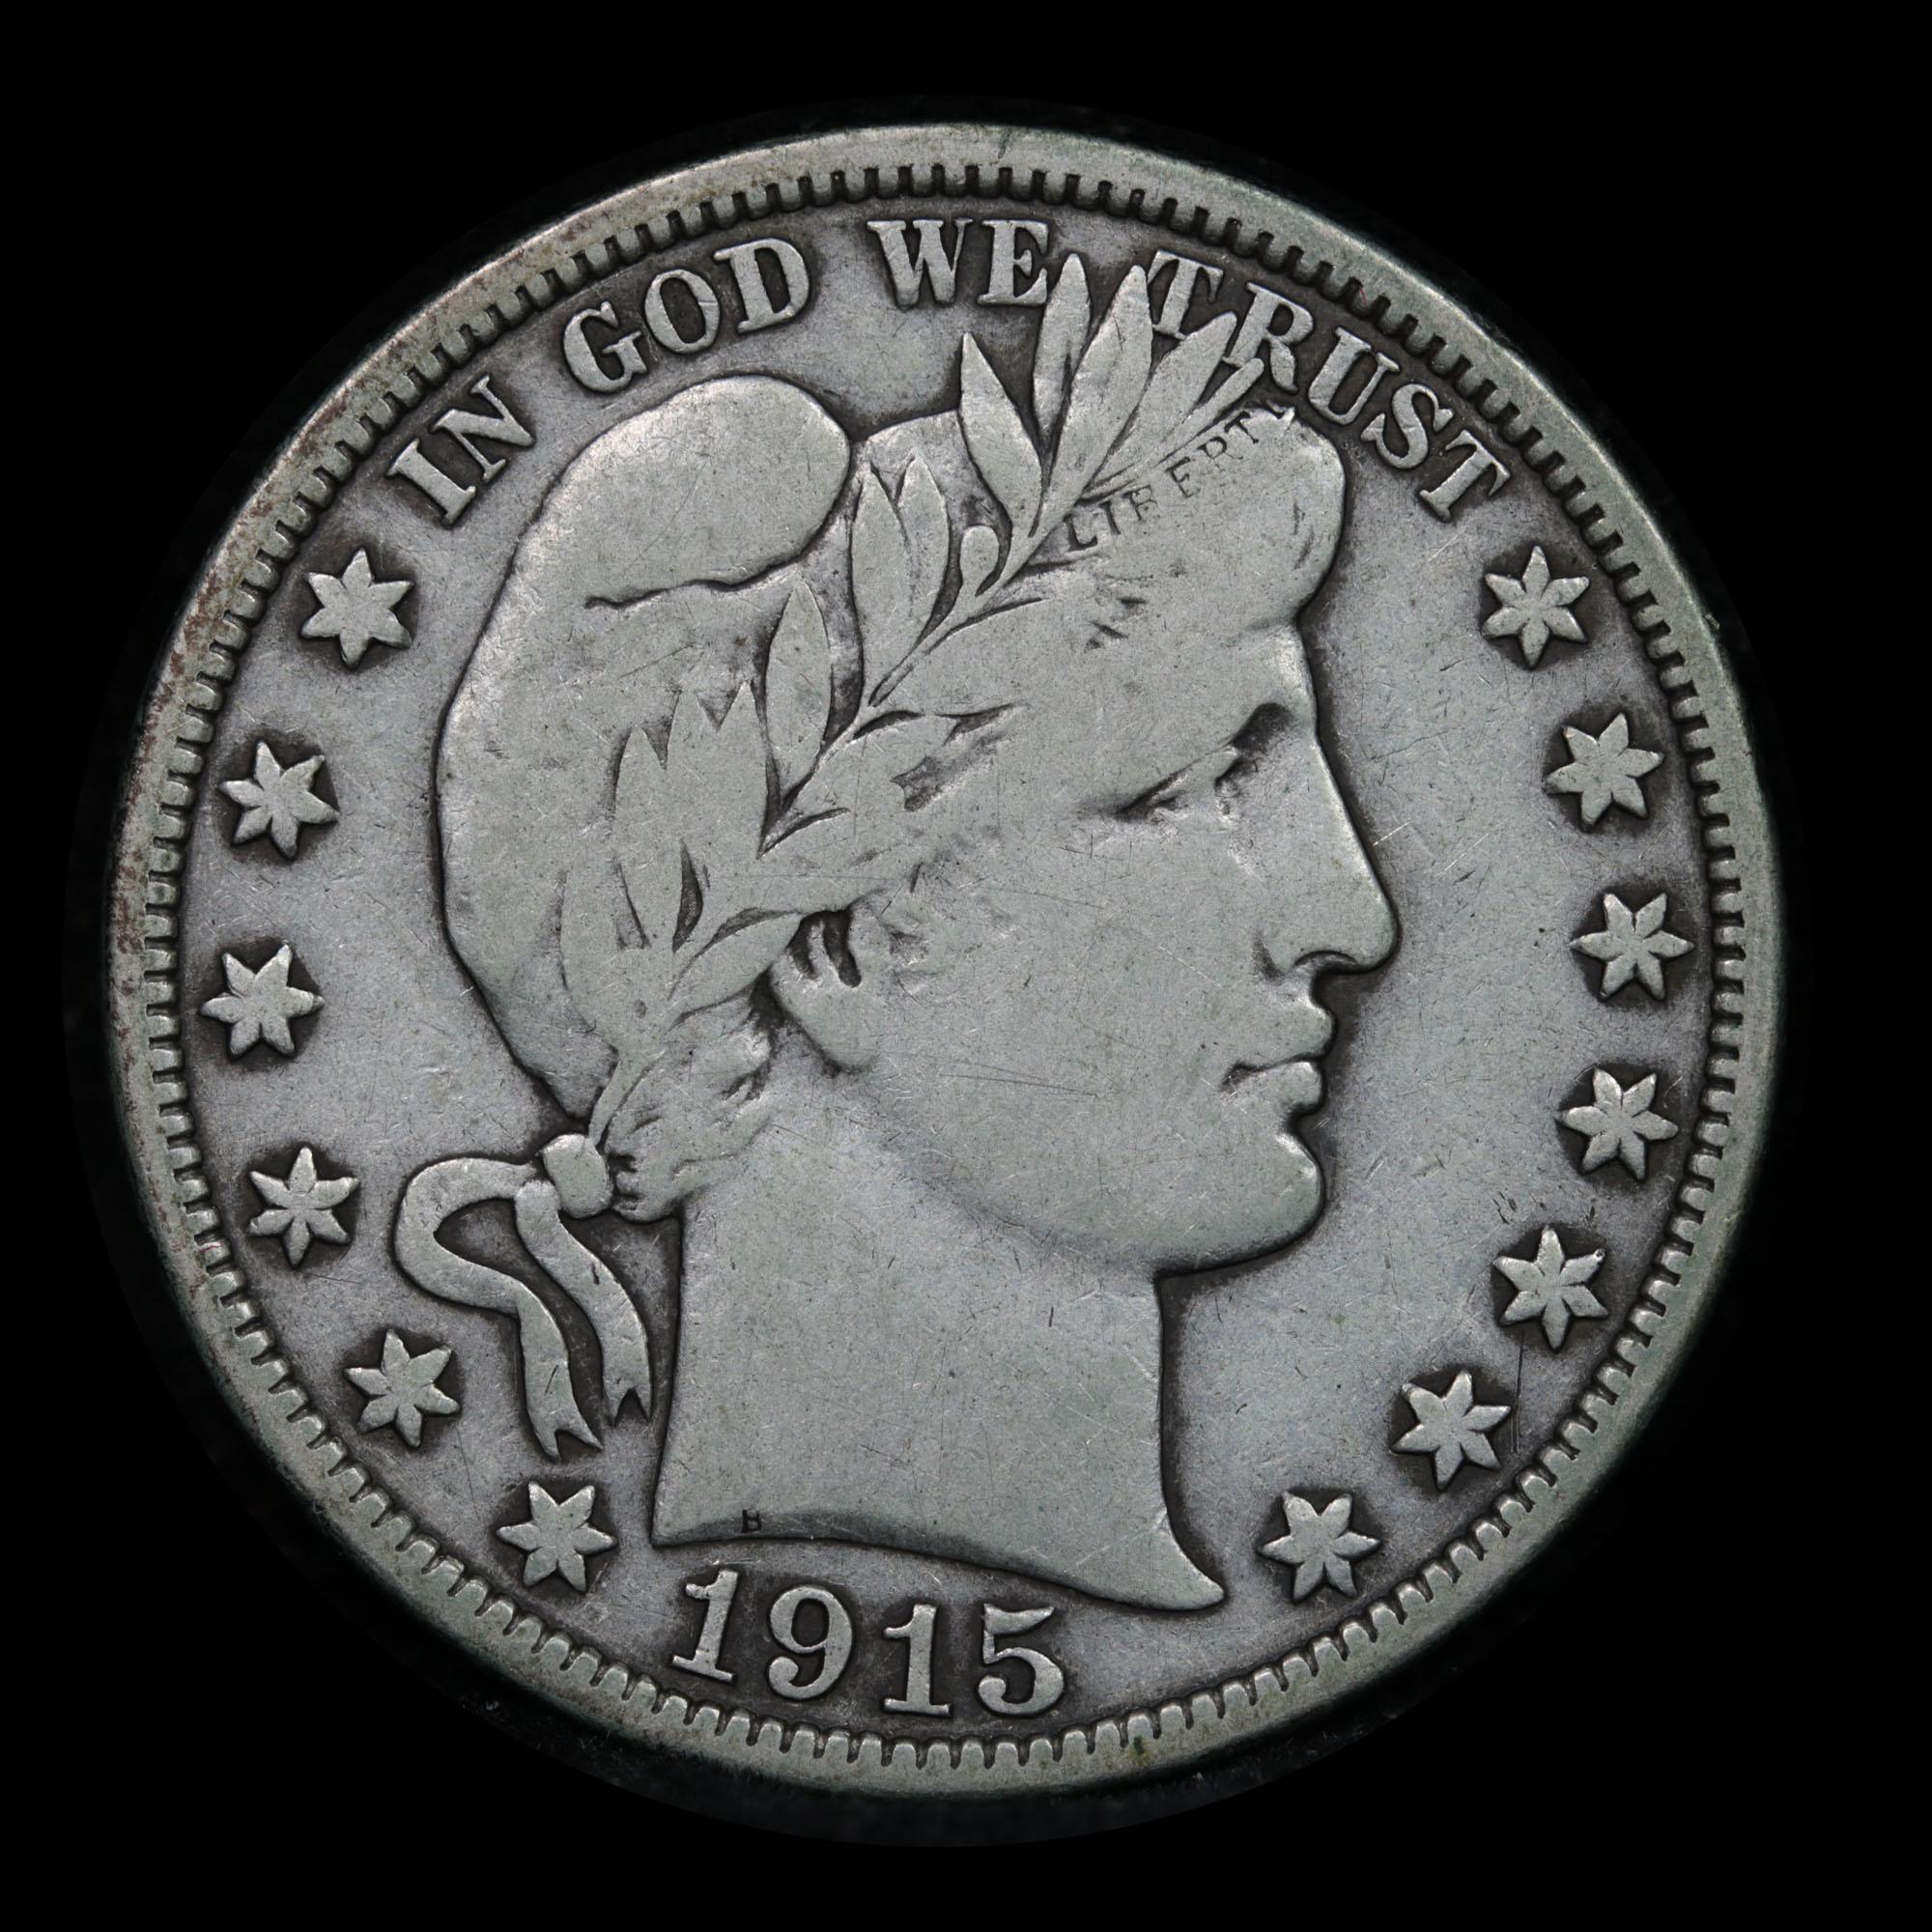 1915-d Barber Half Dollars 50c Grades vf, very fine